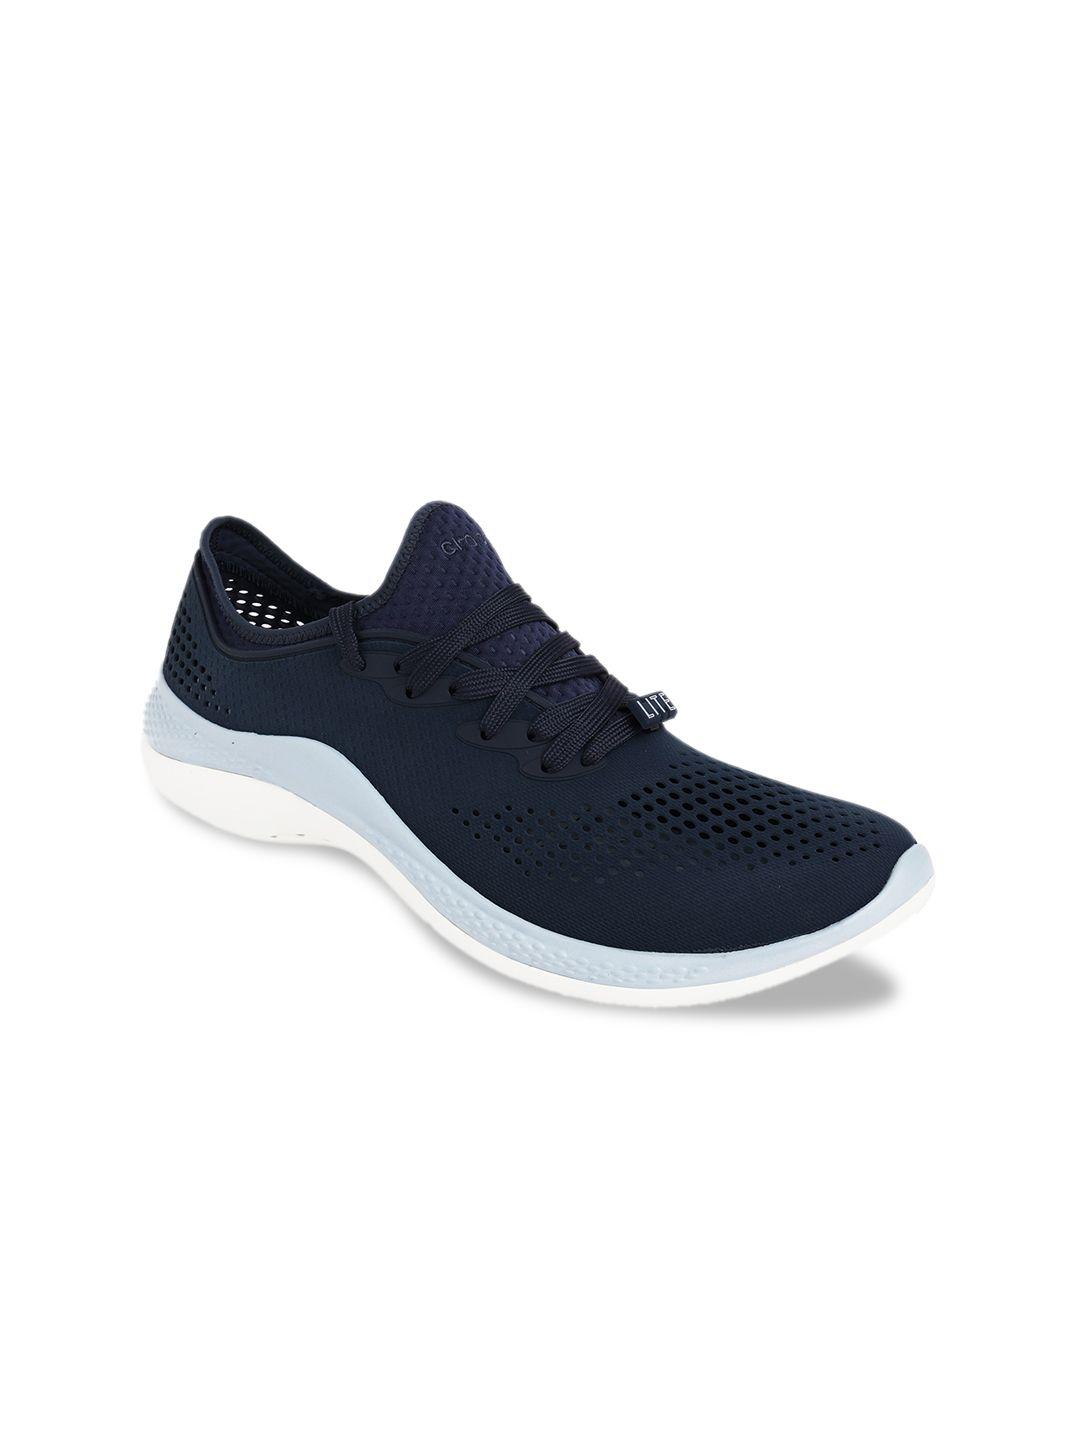 crocs-men-navy-blue-sneakers